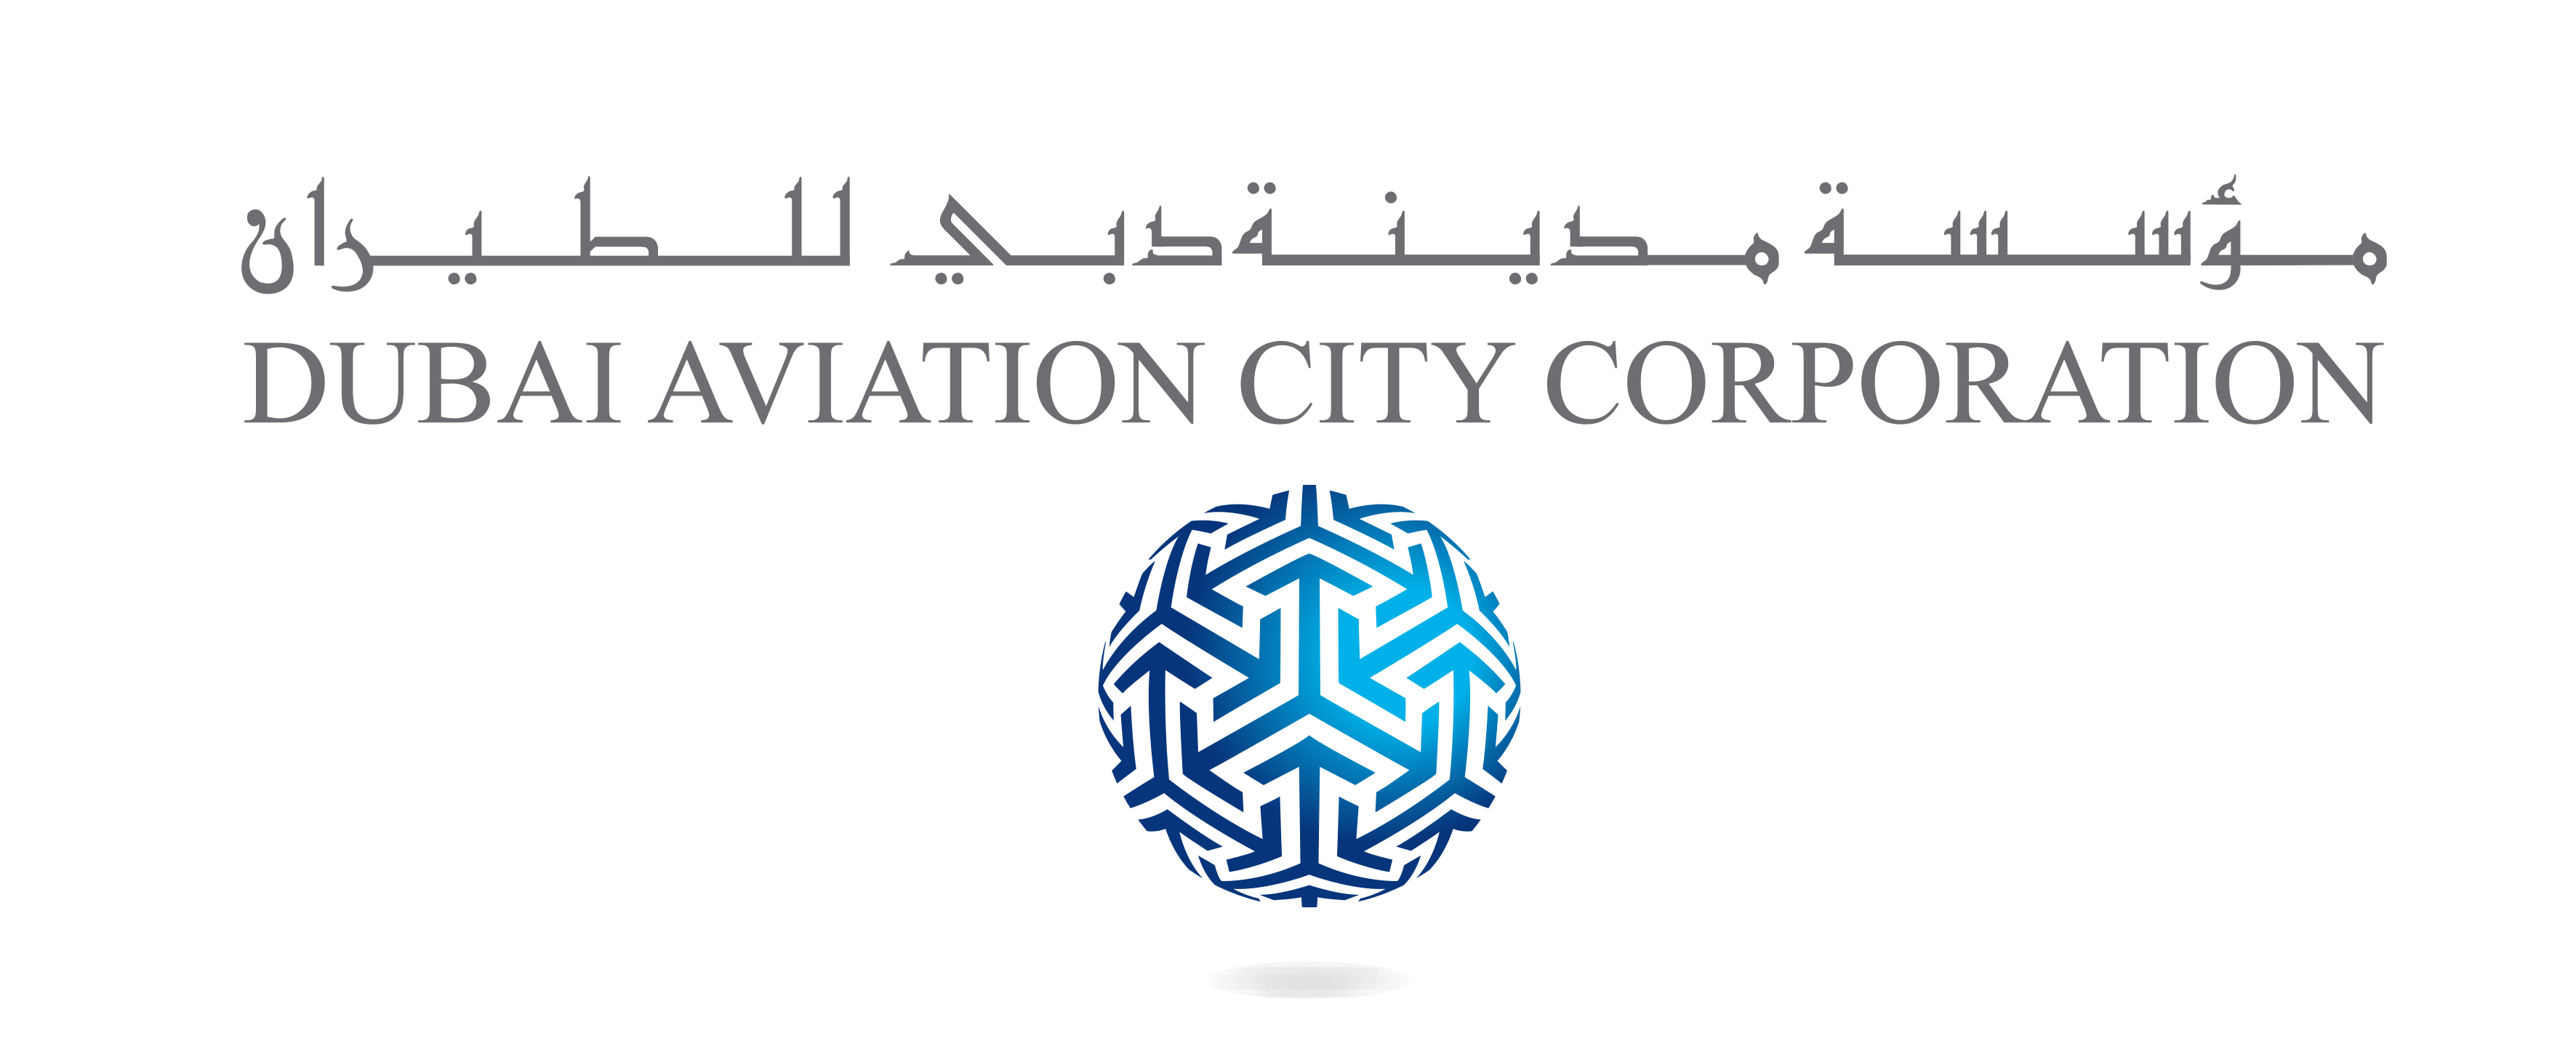 Dubai Aviation City Corporation - Dubai south